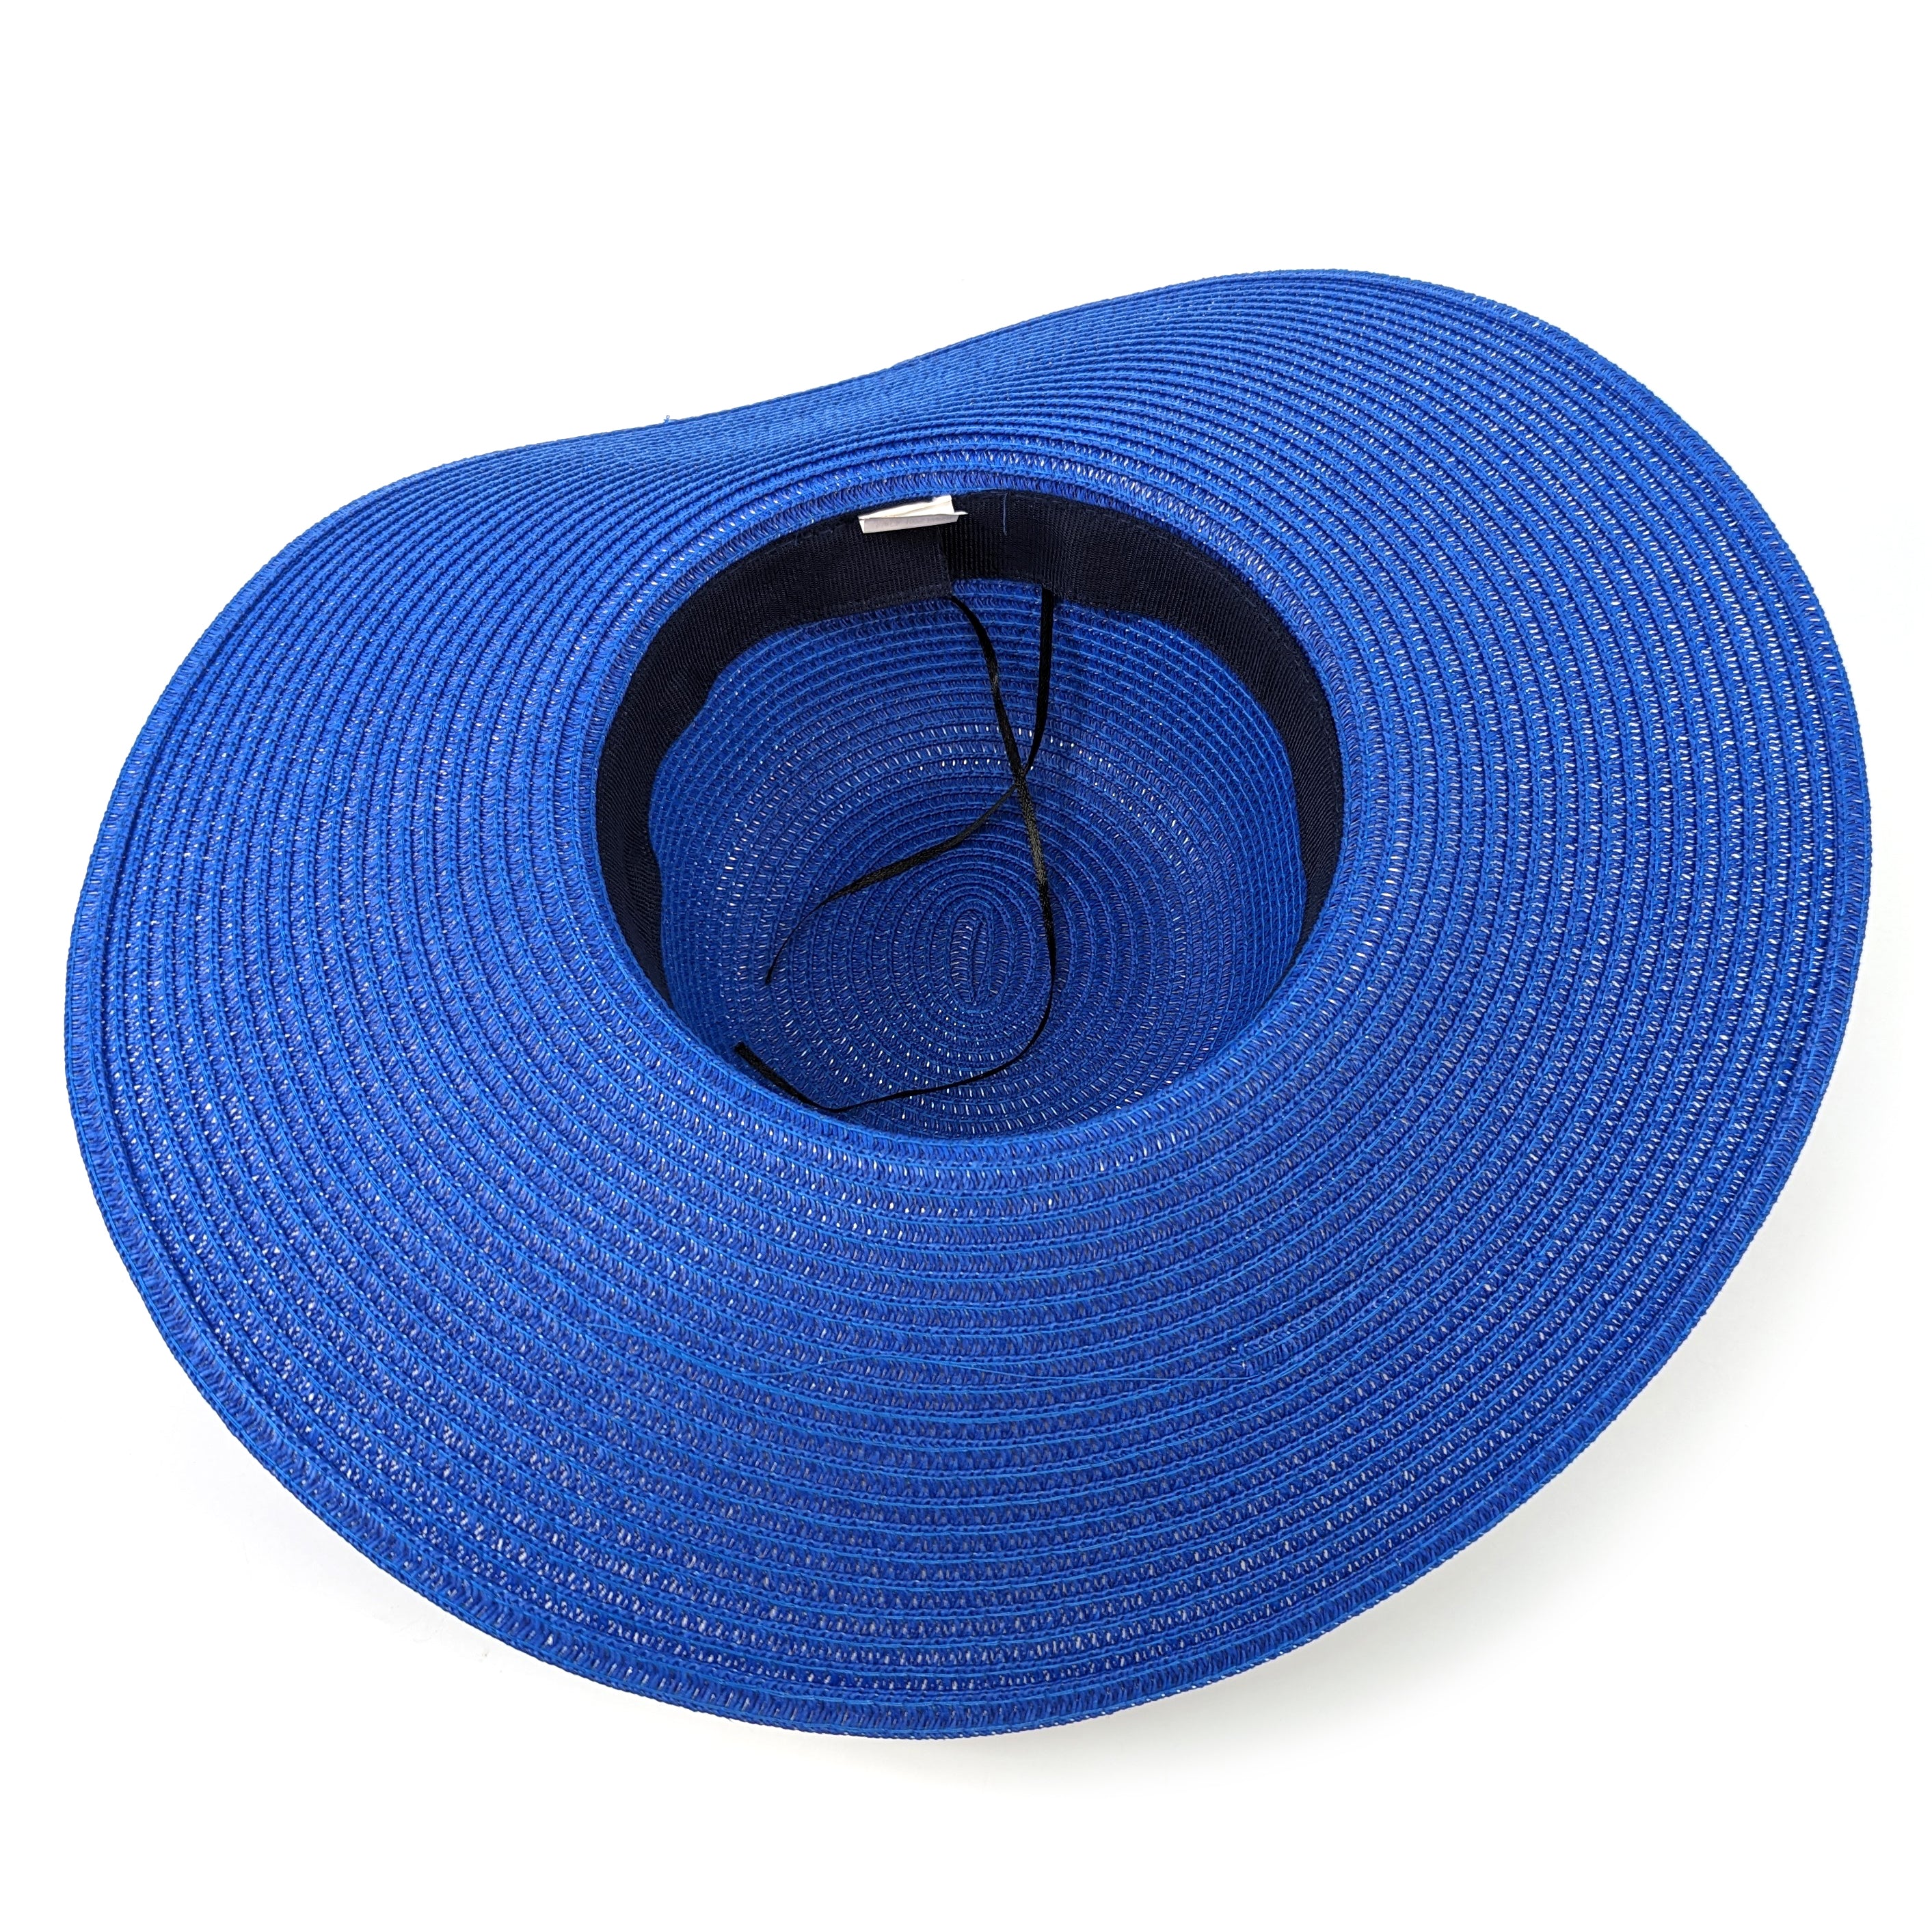 Chapeau pliable à large bord brillant et audacieux - Bleu azur